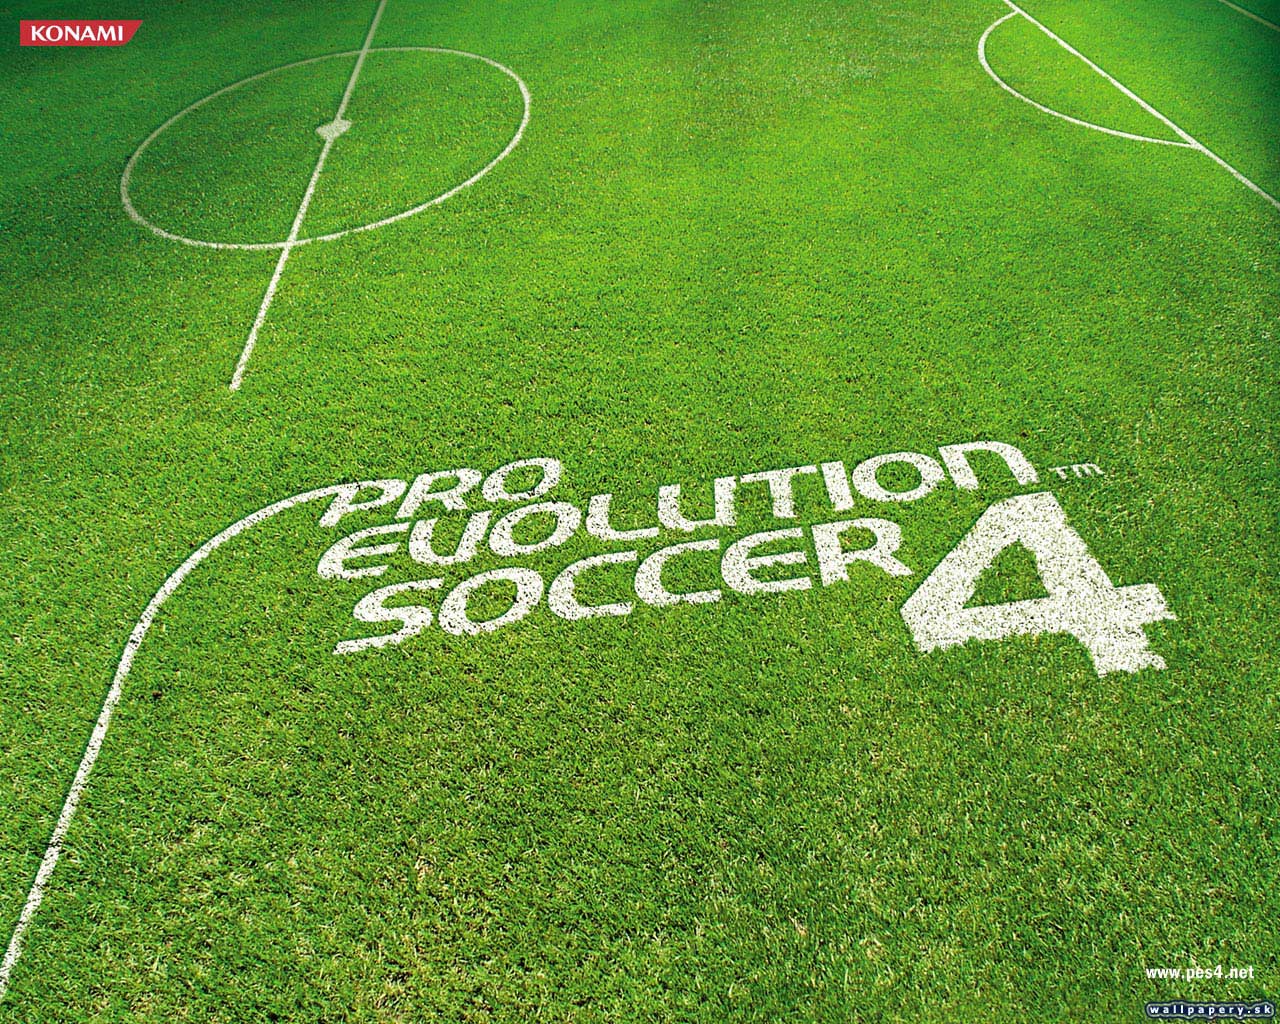 Pro Evolution Soccer 4 - wallpaper 2